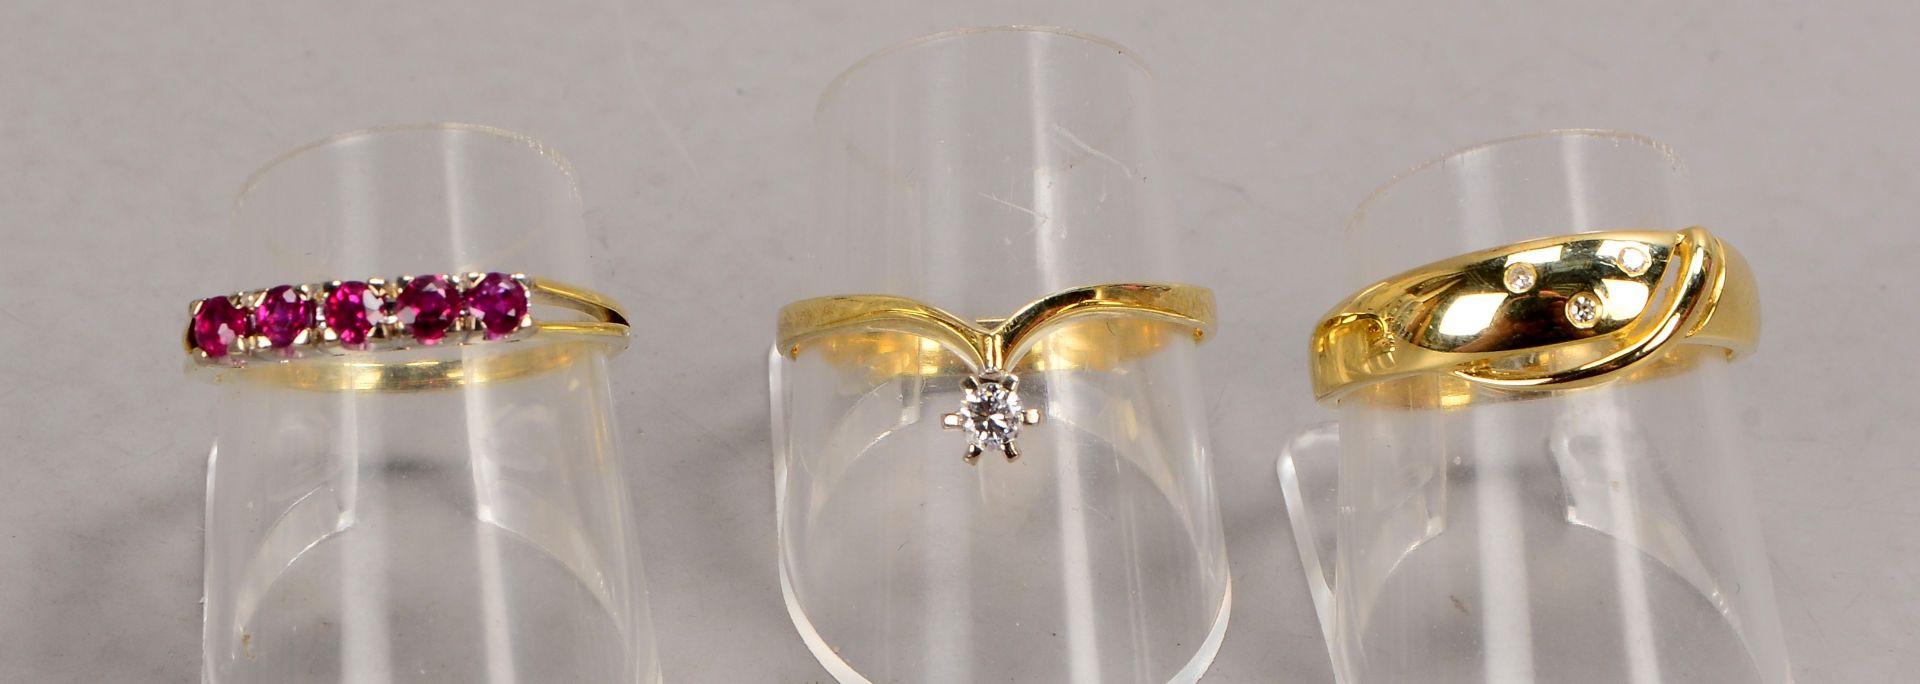 Kleines Ringe-Konvolut, 585 GG (gestempelt), verschiedene Ausführungen, mit Rubinbesatz und Diamante - Bild 2 aus 2